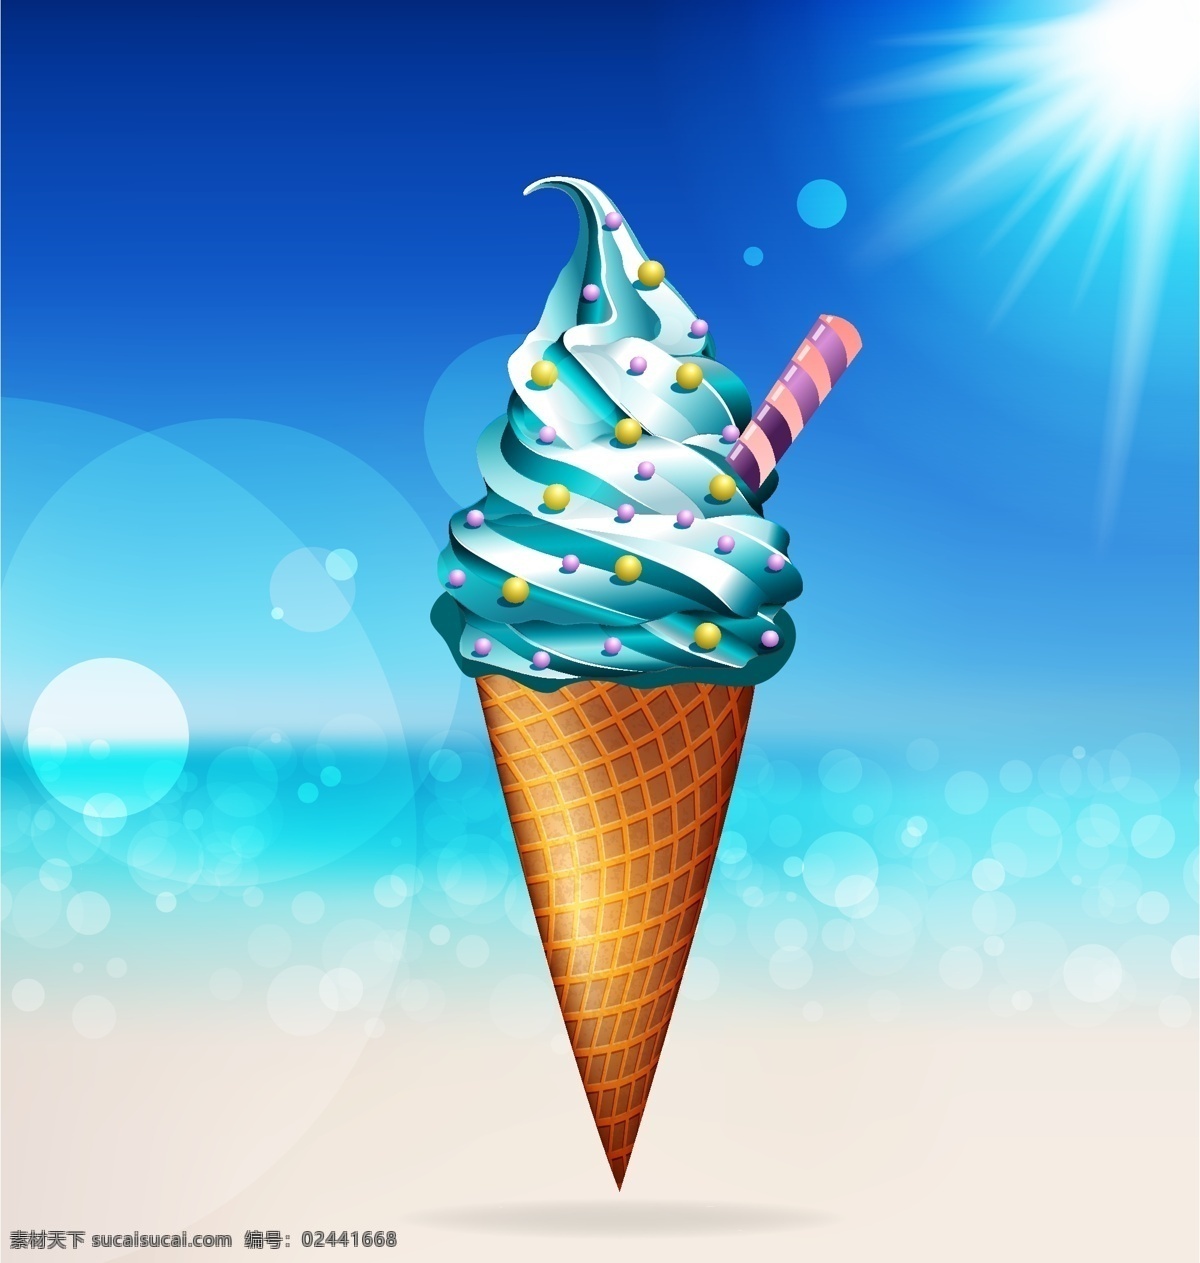 夏季冰淇凌 雪糕 冰棒 手绘雪糕 矢量素材 手绘食物 食物 美食 矢量雪糕 冰淇凌 夏季插画 梦幻背景 唯美